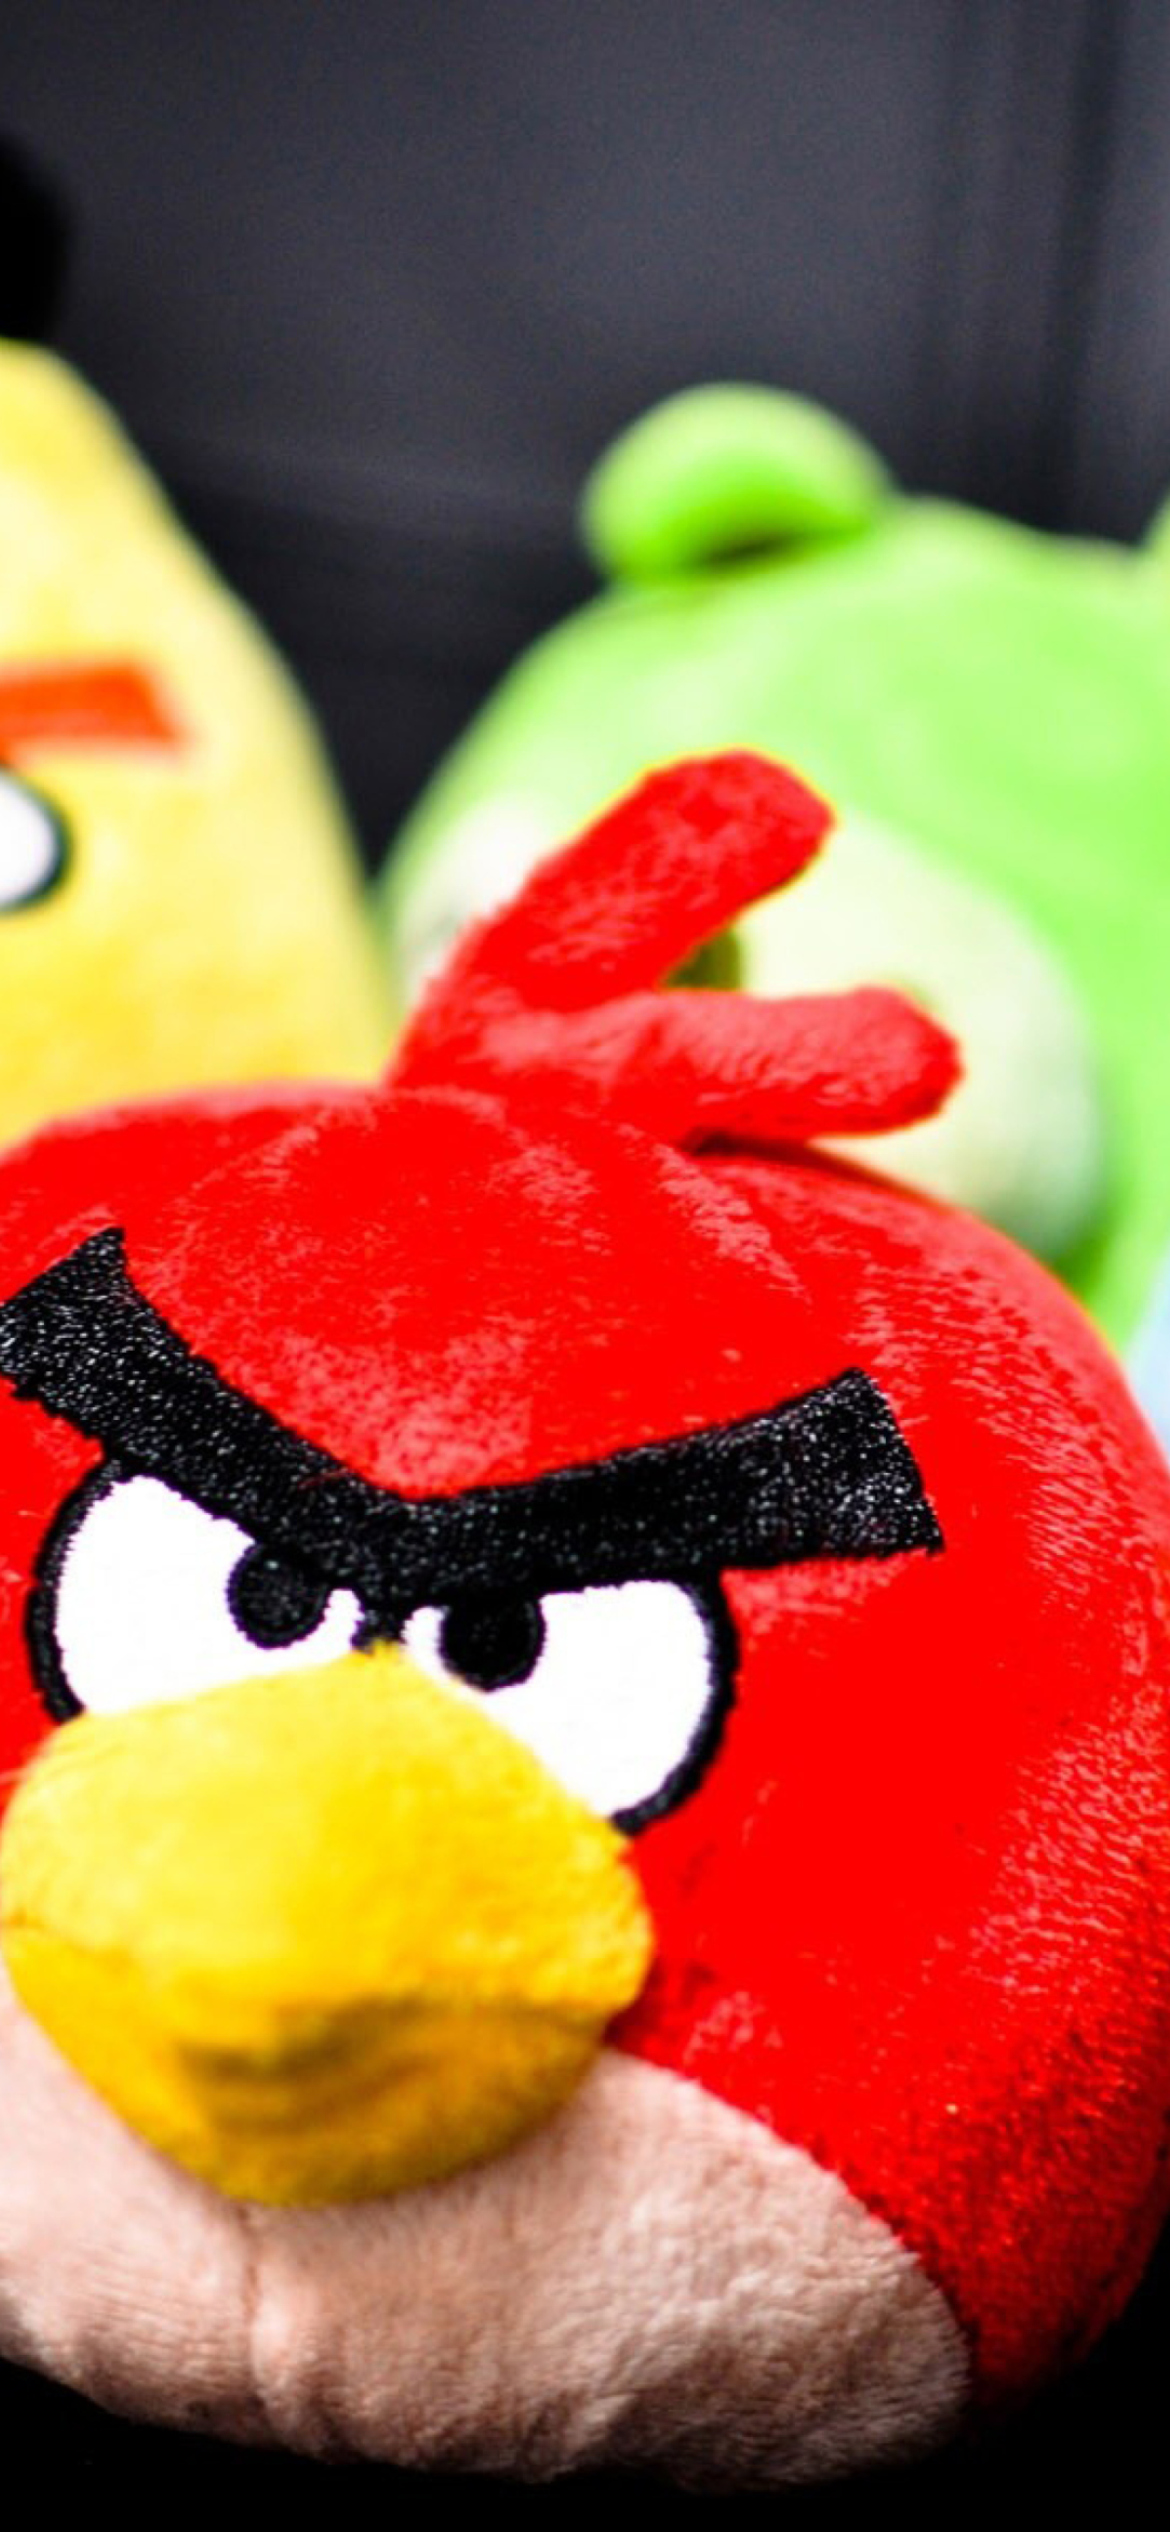 Обои Angry Birds Plush Toy 1170x2532